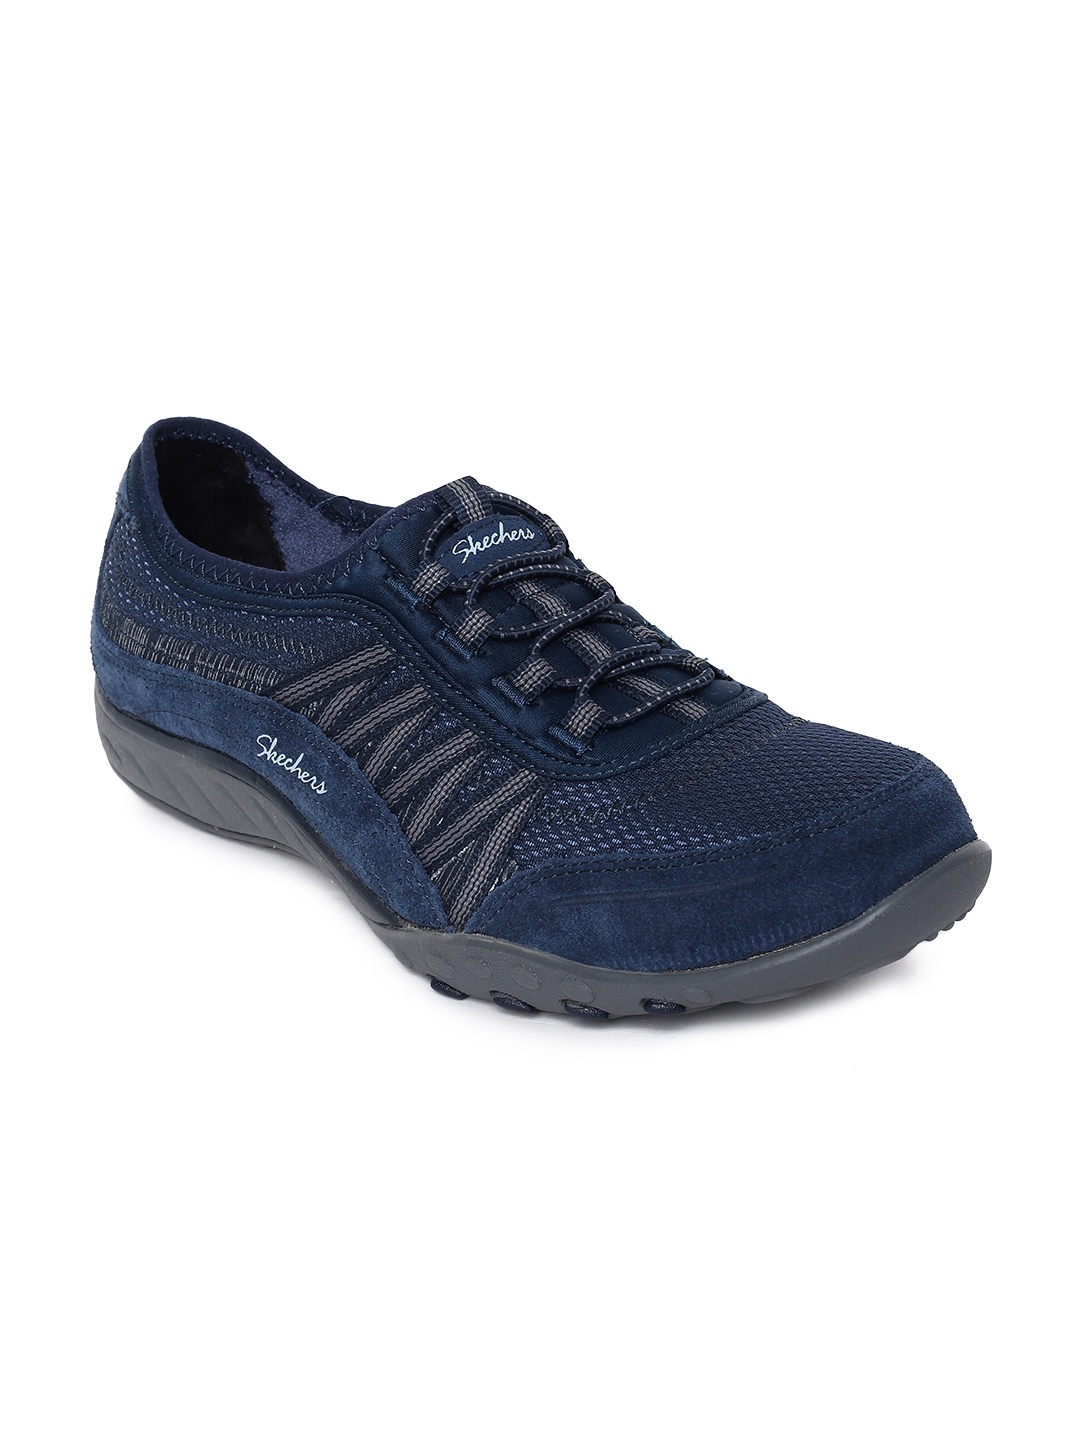 Buy Skechers Women Navy Blue Slip On Sneakers - Casual Shoes for Women